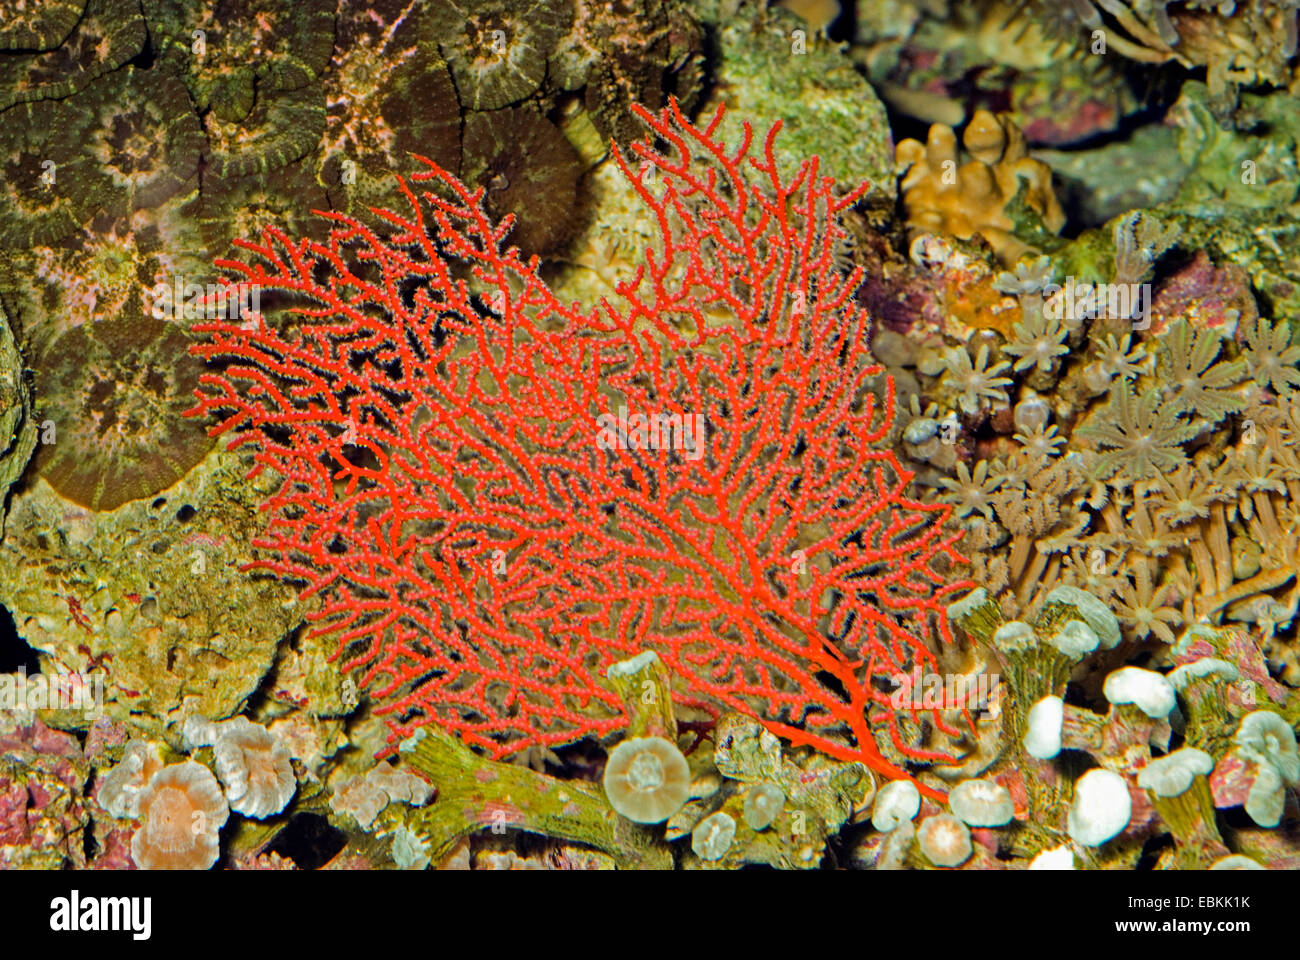 Gorgonian sea fan (Melithaea spec.), side view Stock Photo